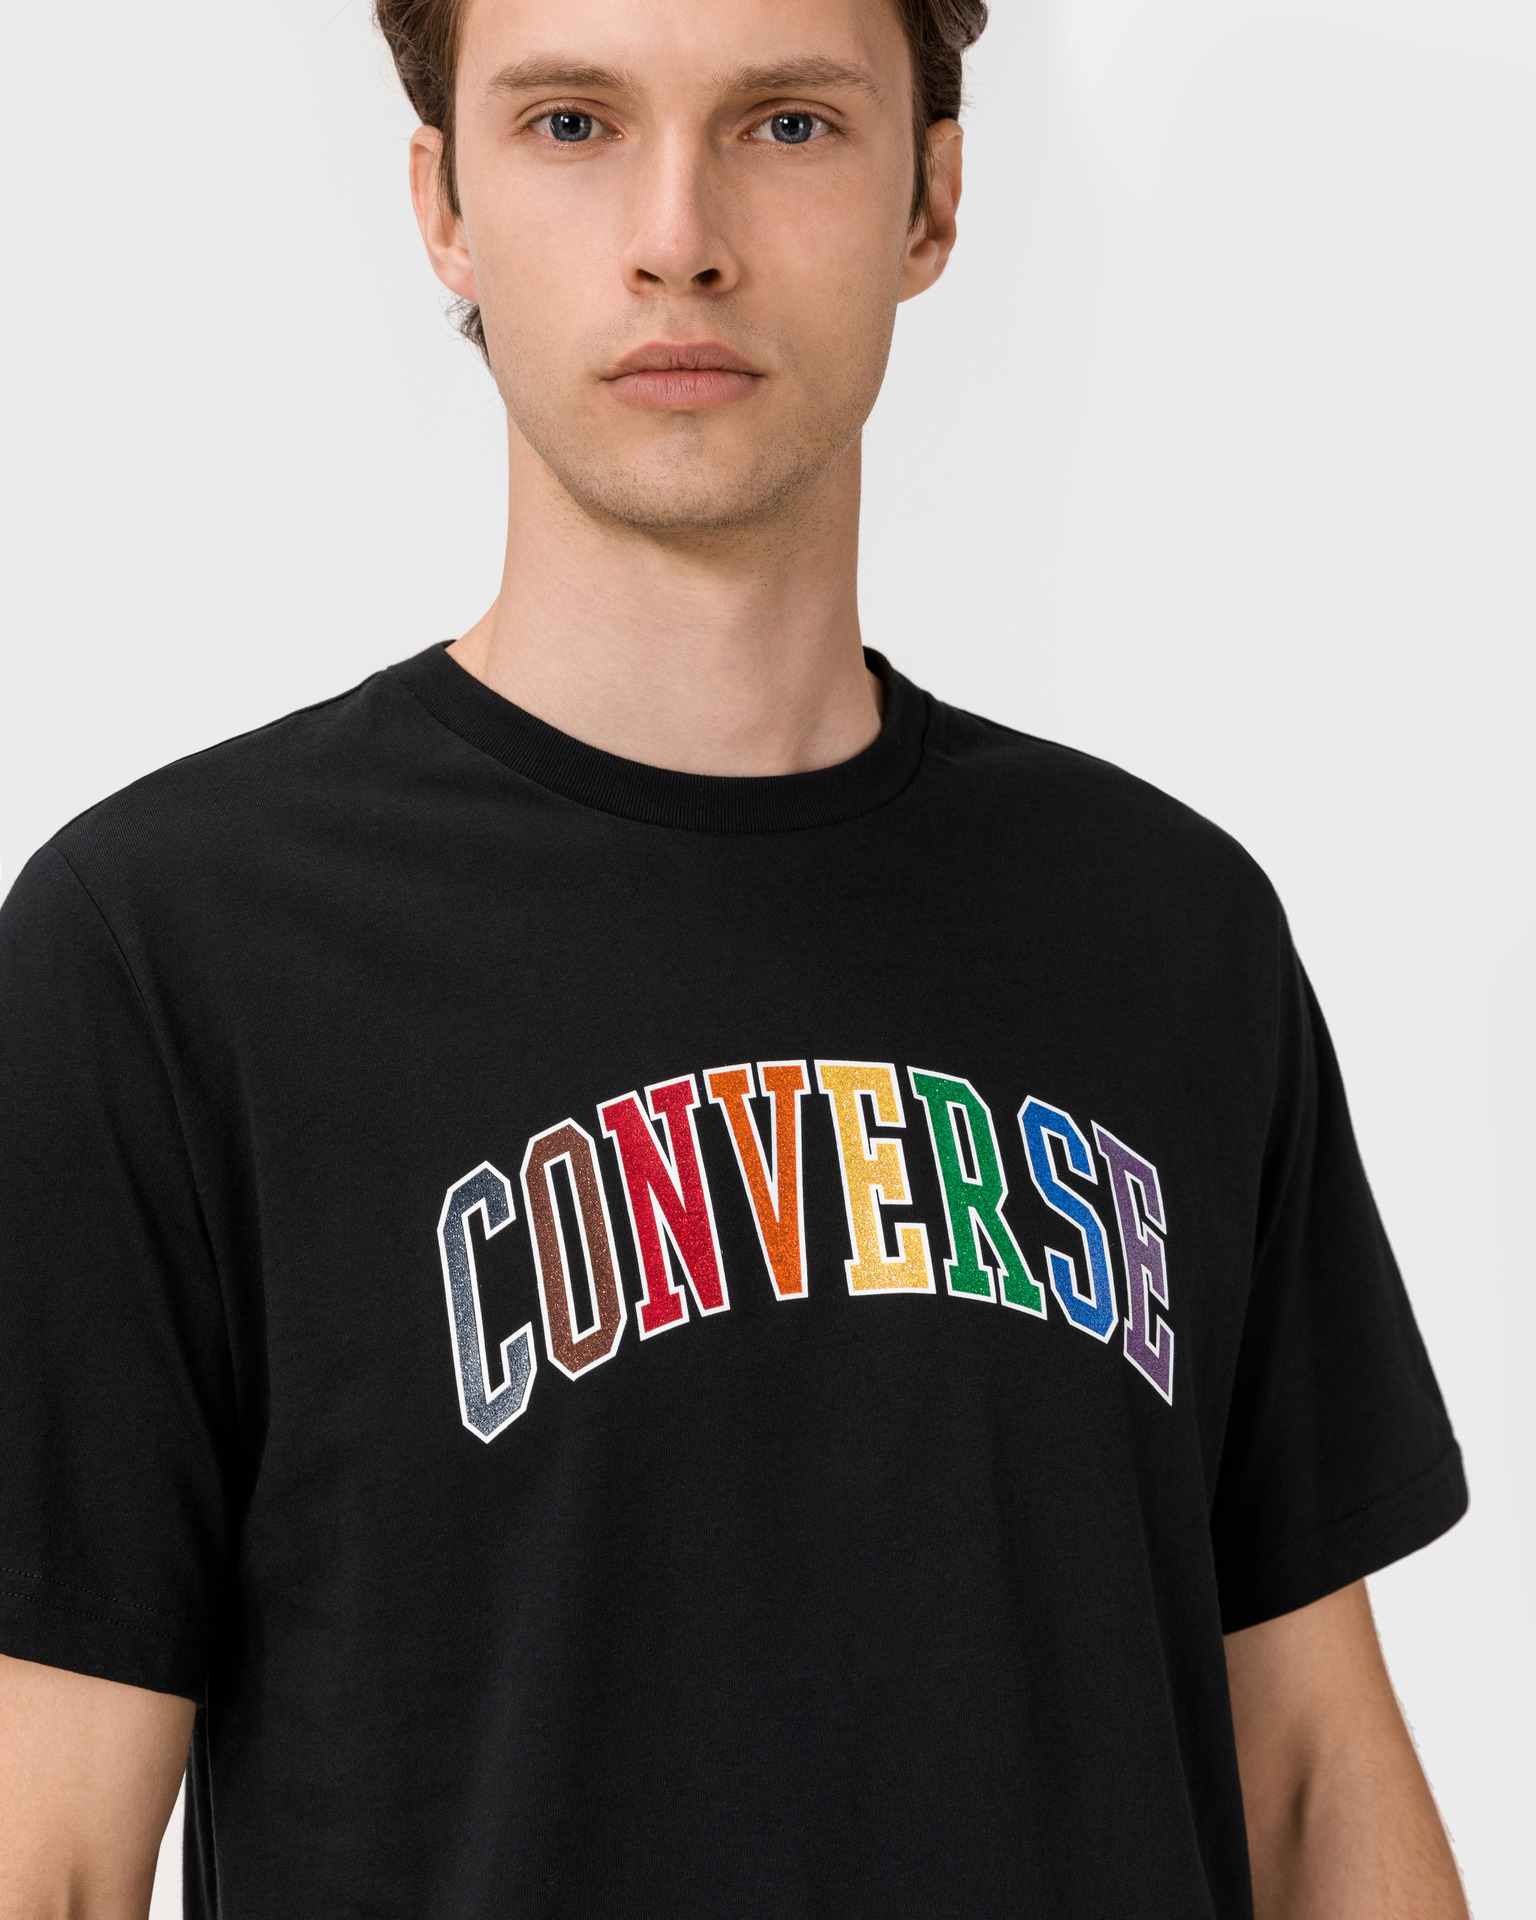 Converse - Pride T-shirt Bibloo.com